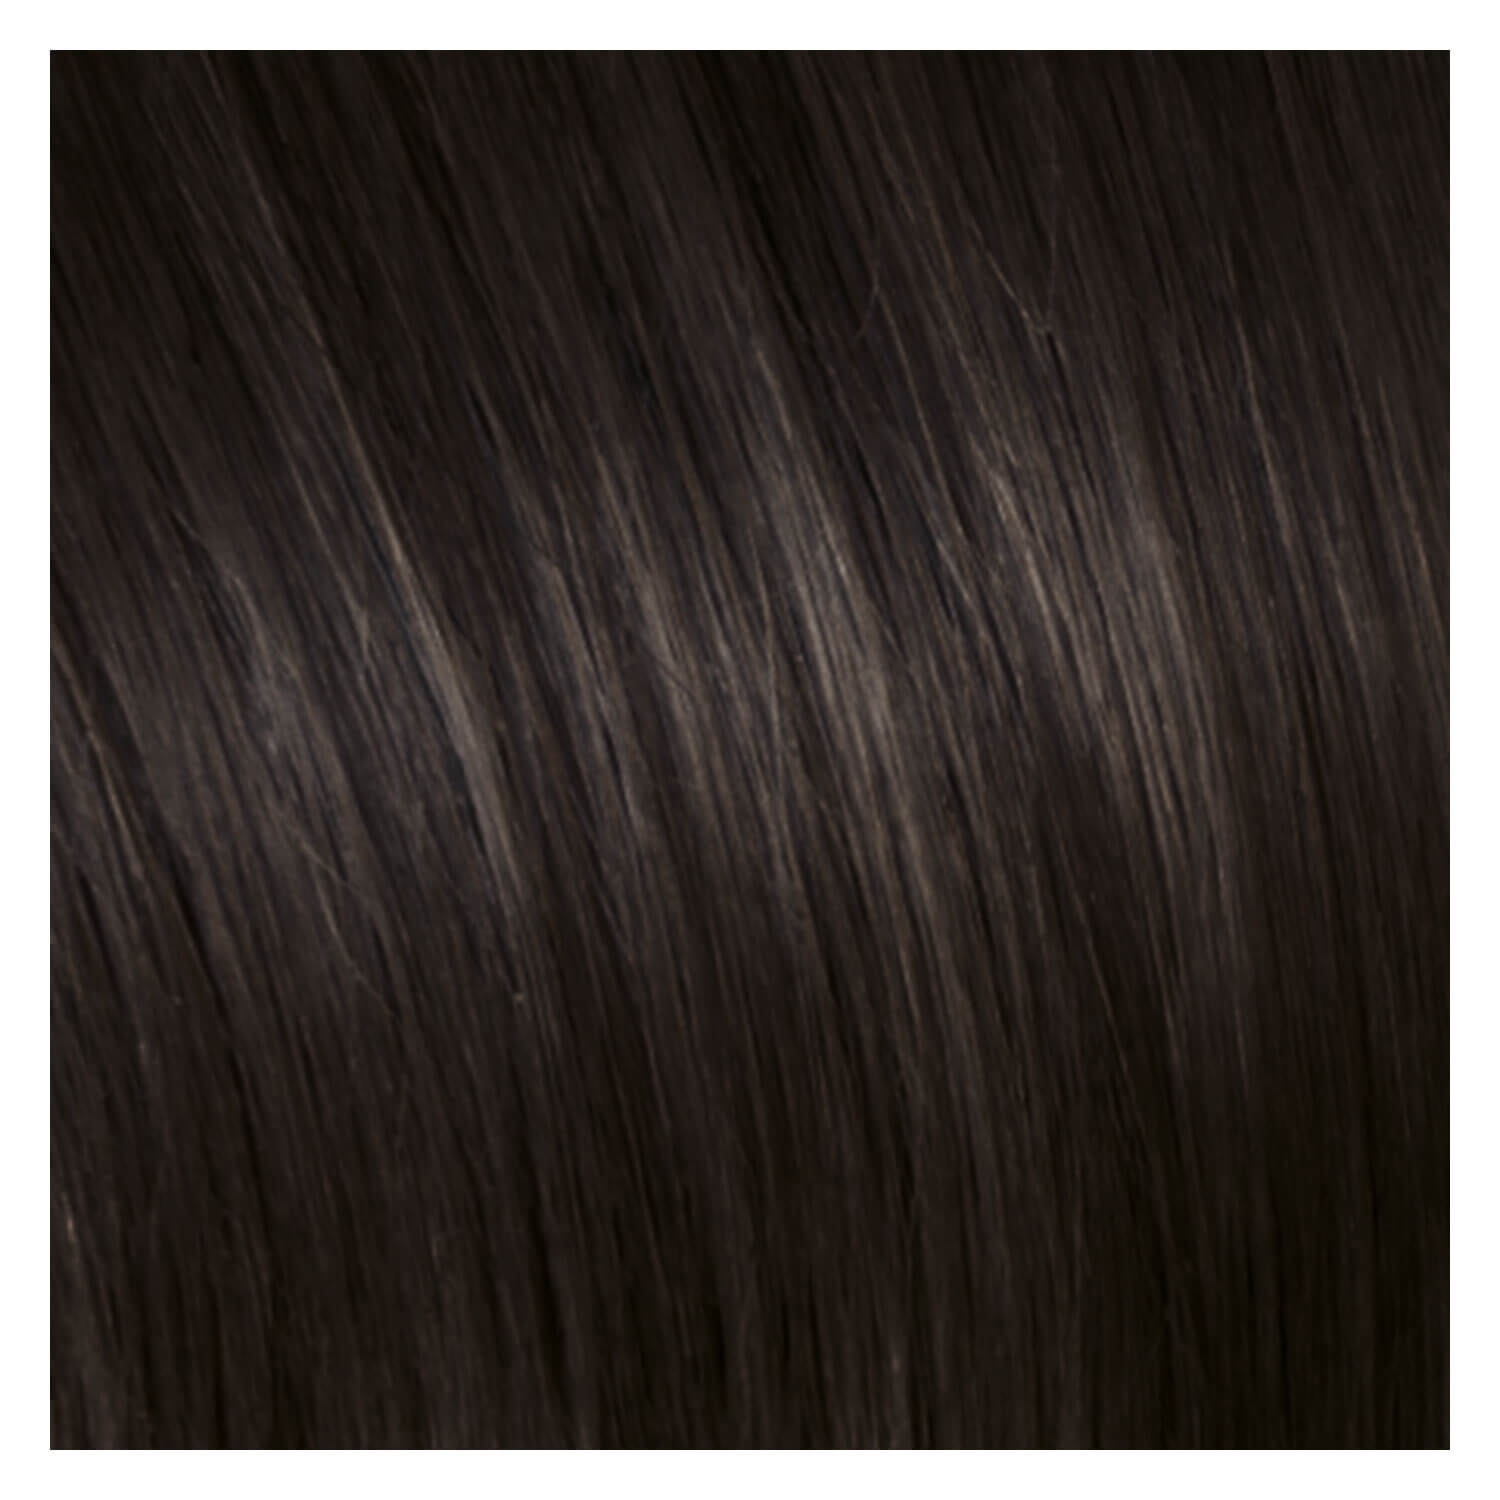 Produktbild von SHE Clip In-System Hair Extensions - 9-teiliges Set 4 Kastanienbraun 50/55cm